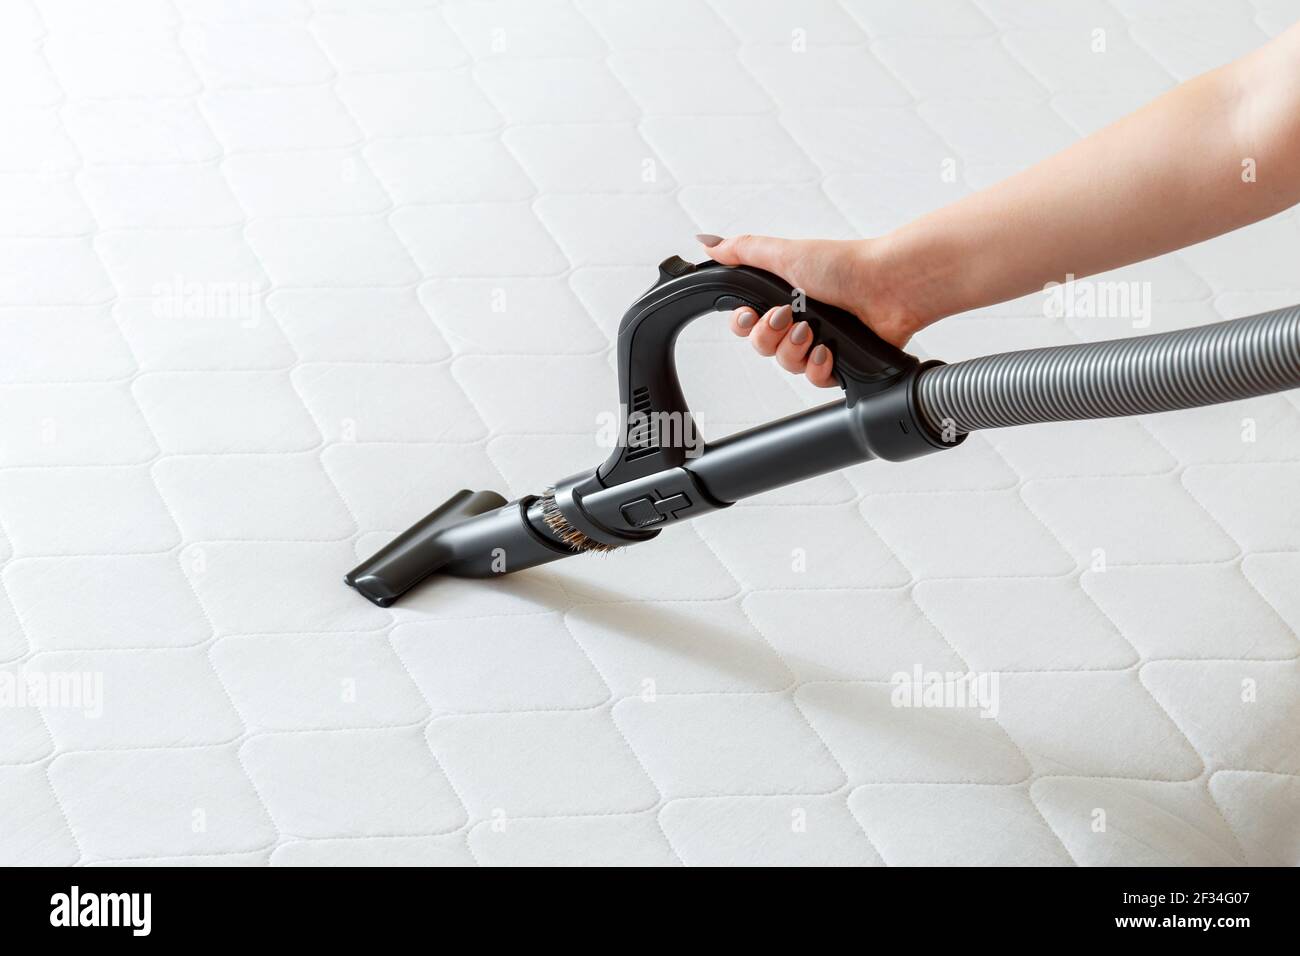 Professionelle Reinigung Matratze durch Staubsauger von Staub Bakterien  schmutzig. Weibliche Hand verwenden Staubsauger Maschine für die Reinigung  Matratze in der Wohnung Stockfotografie - Alamy